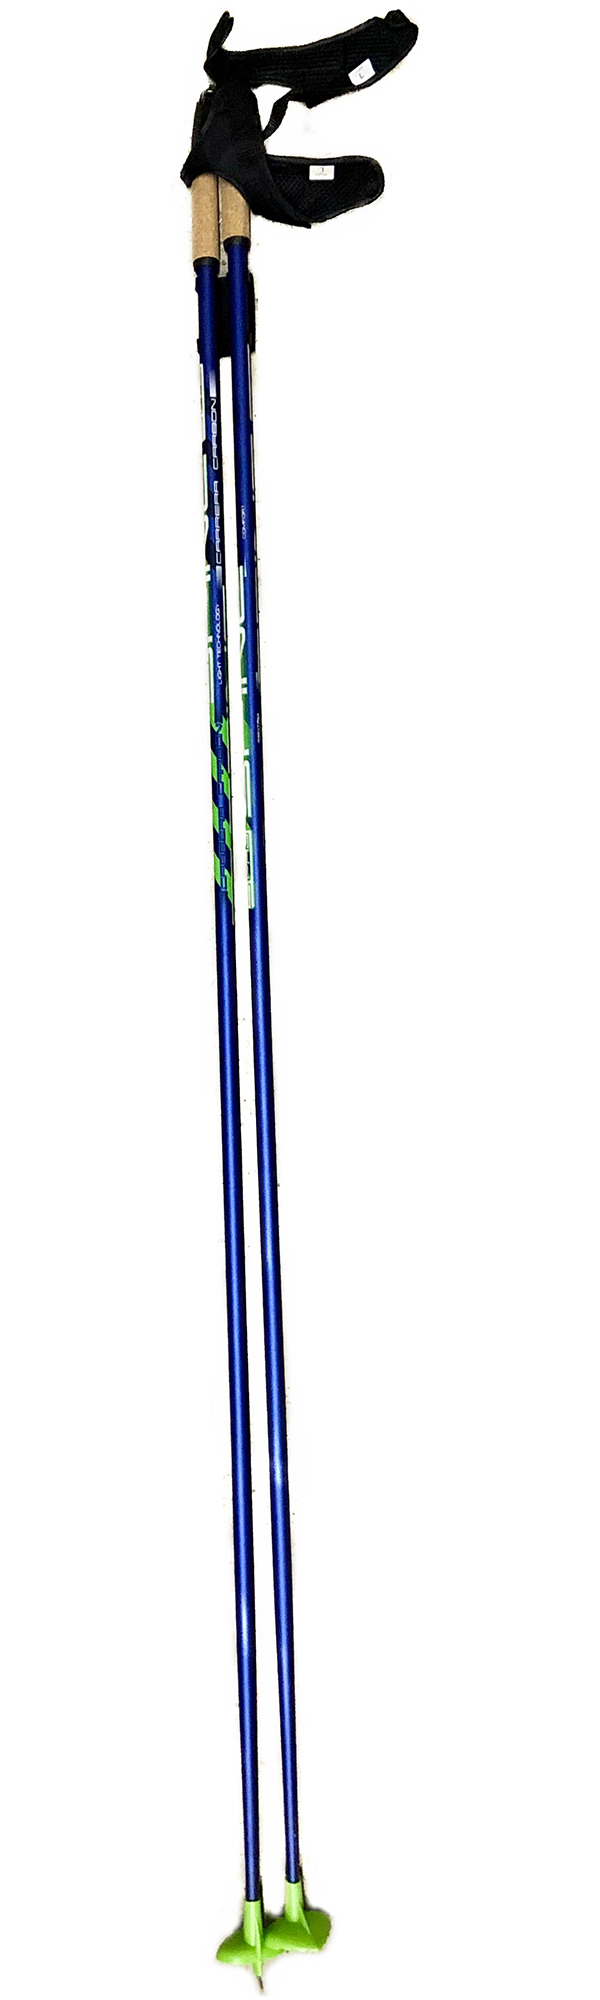 Палки лыжные SPINE Carrera Carbon  10016 1,45 м Сине-зеленый